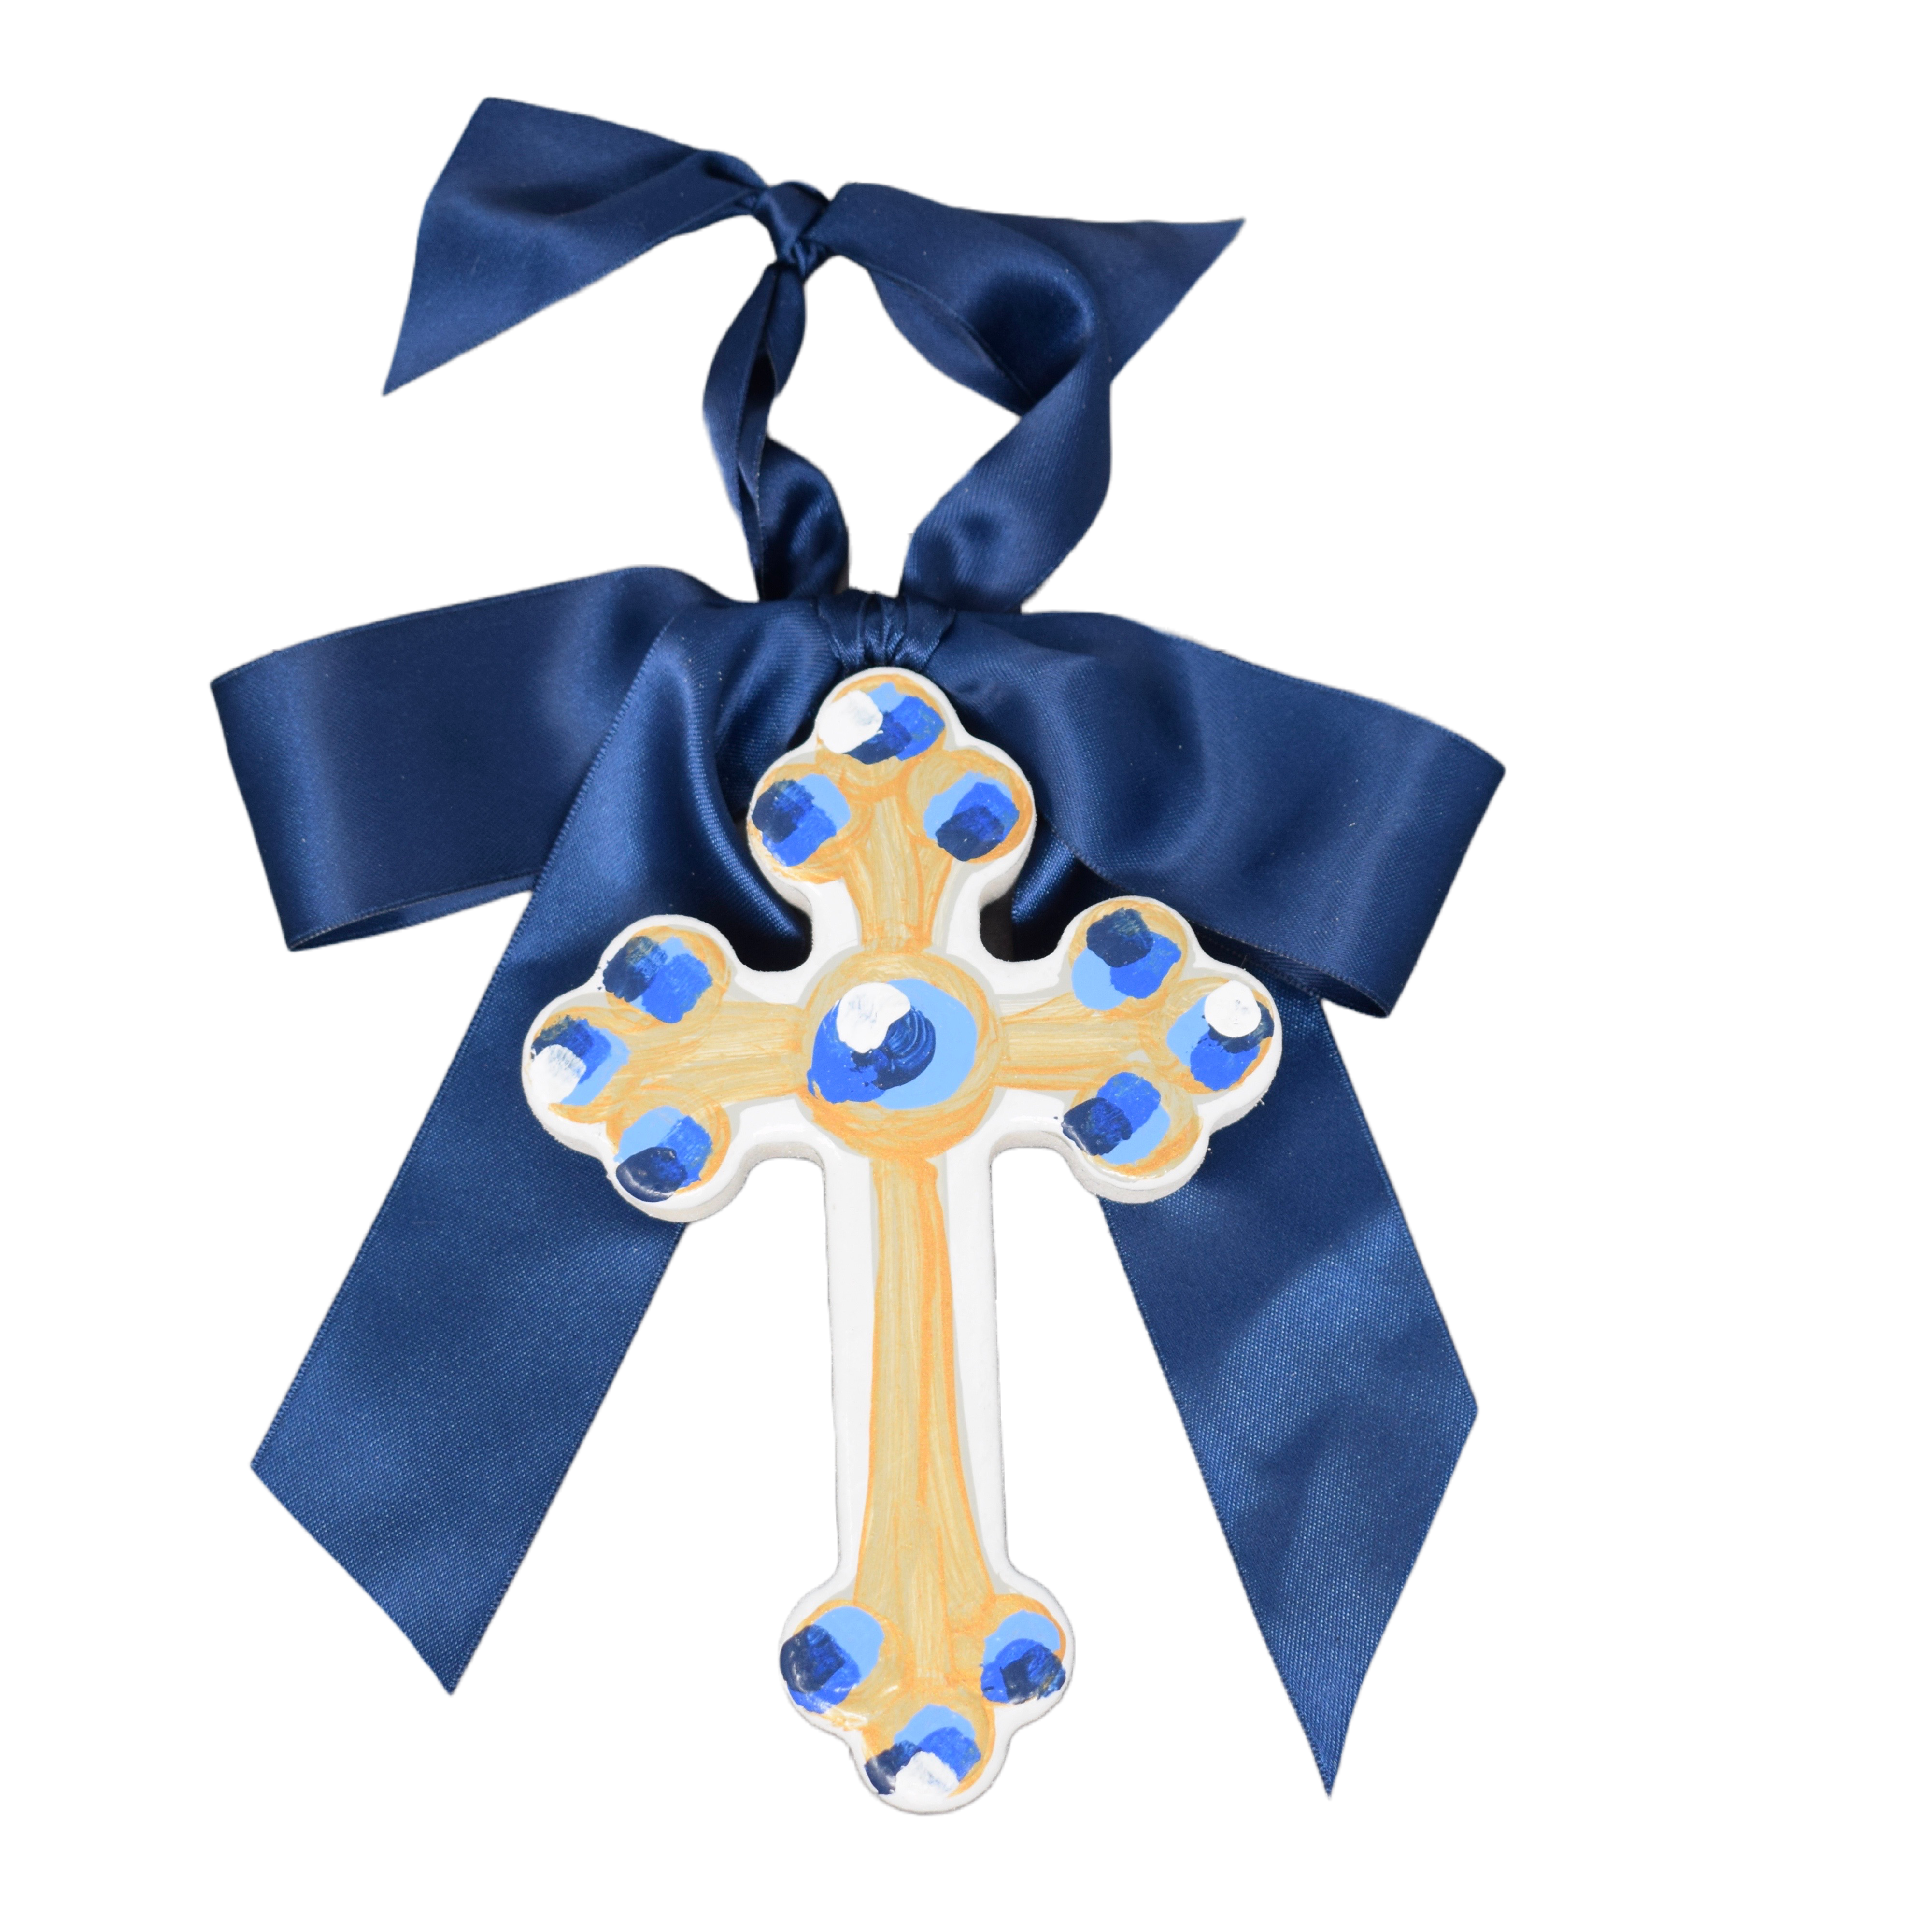 Blue Hallelujah Cross